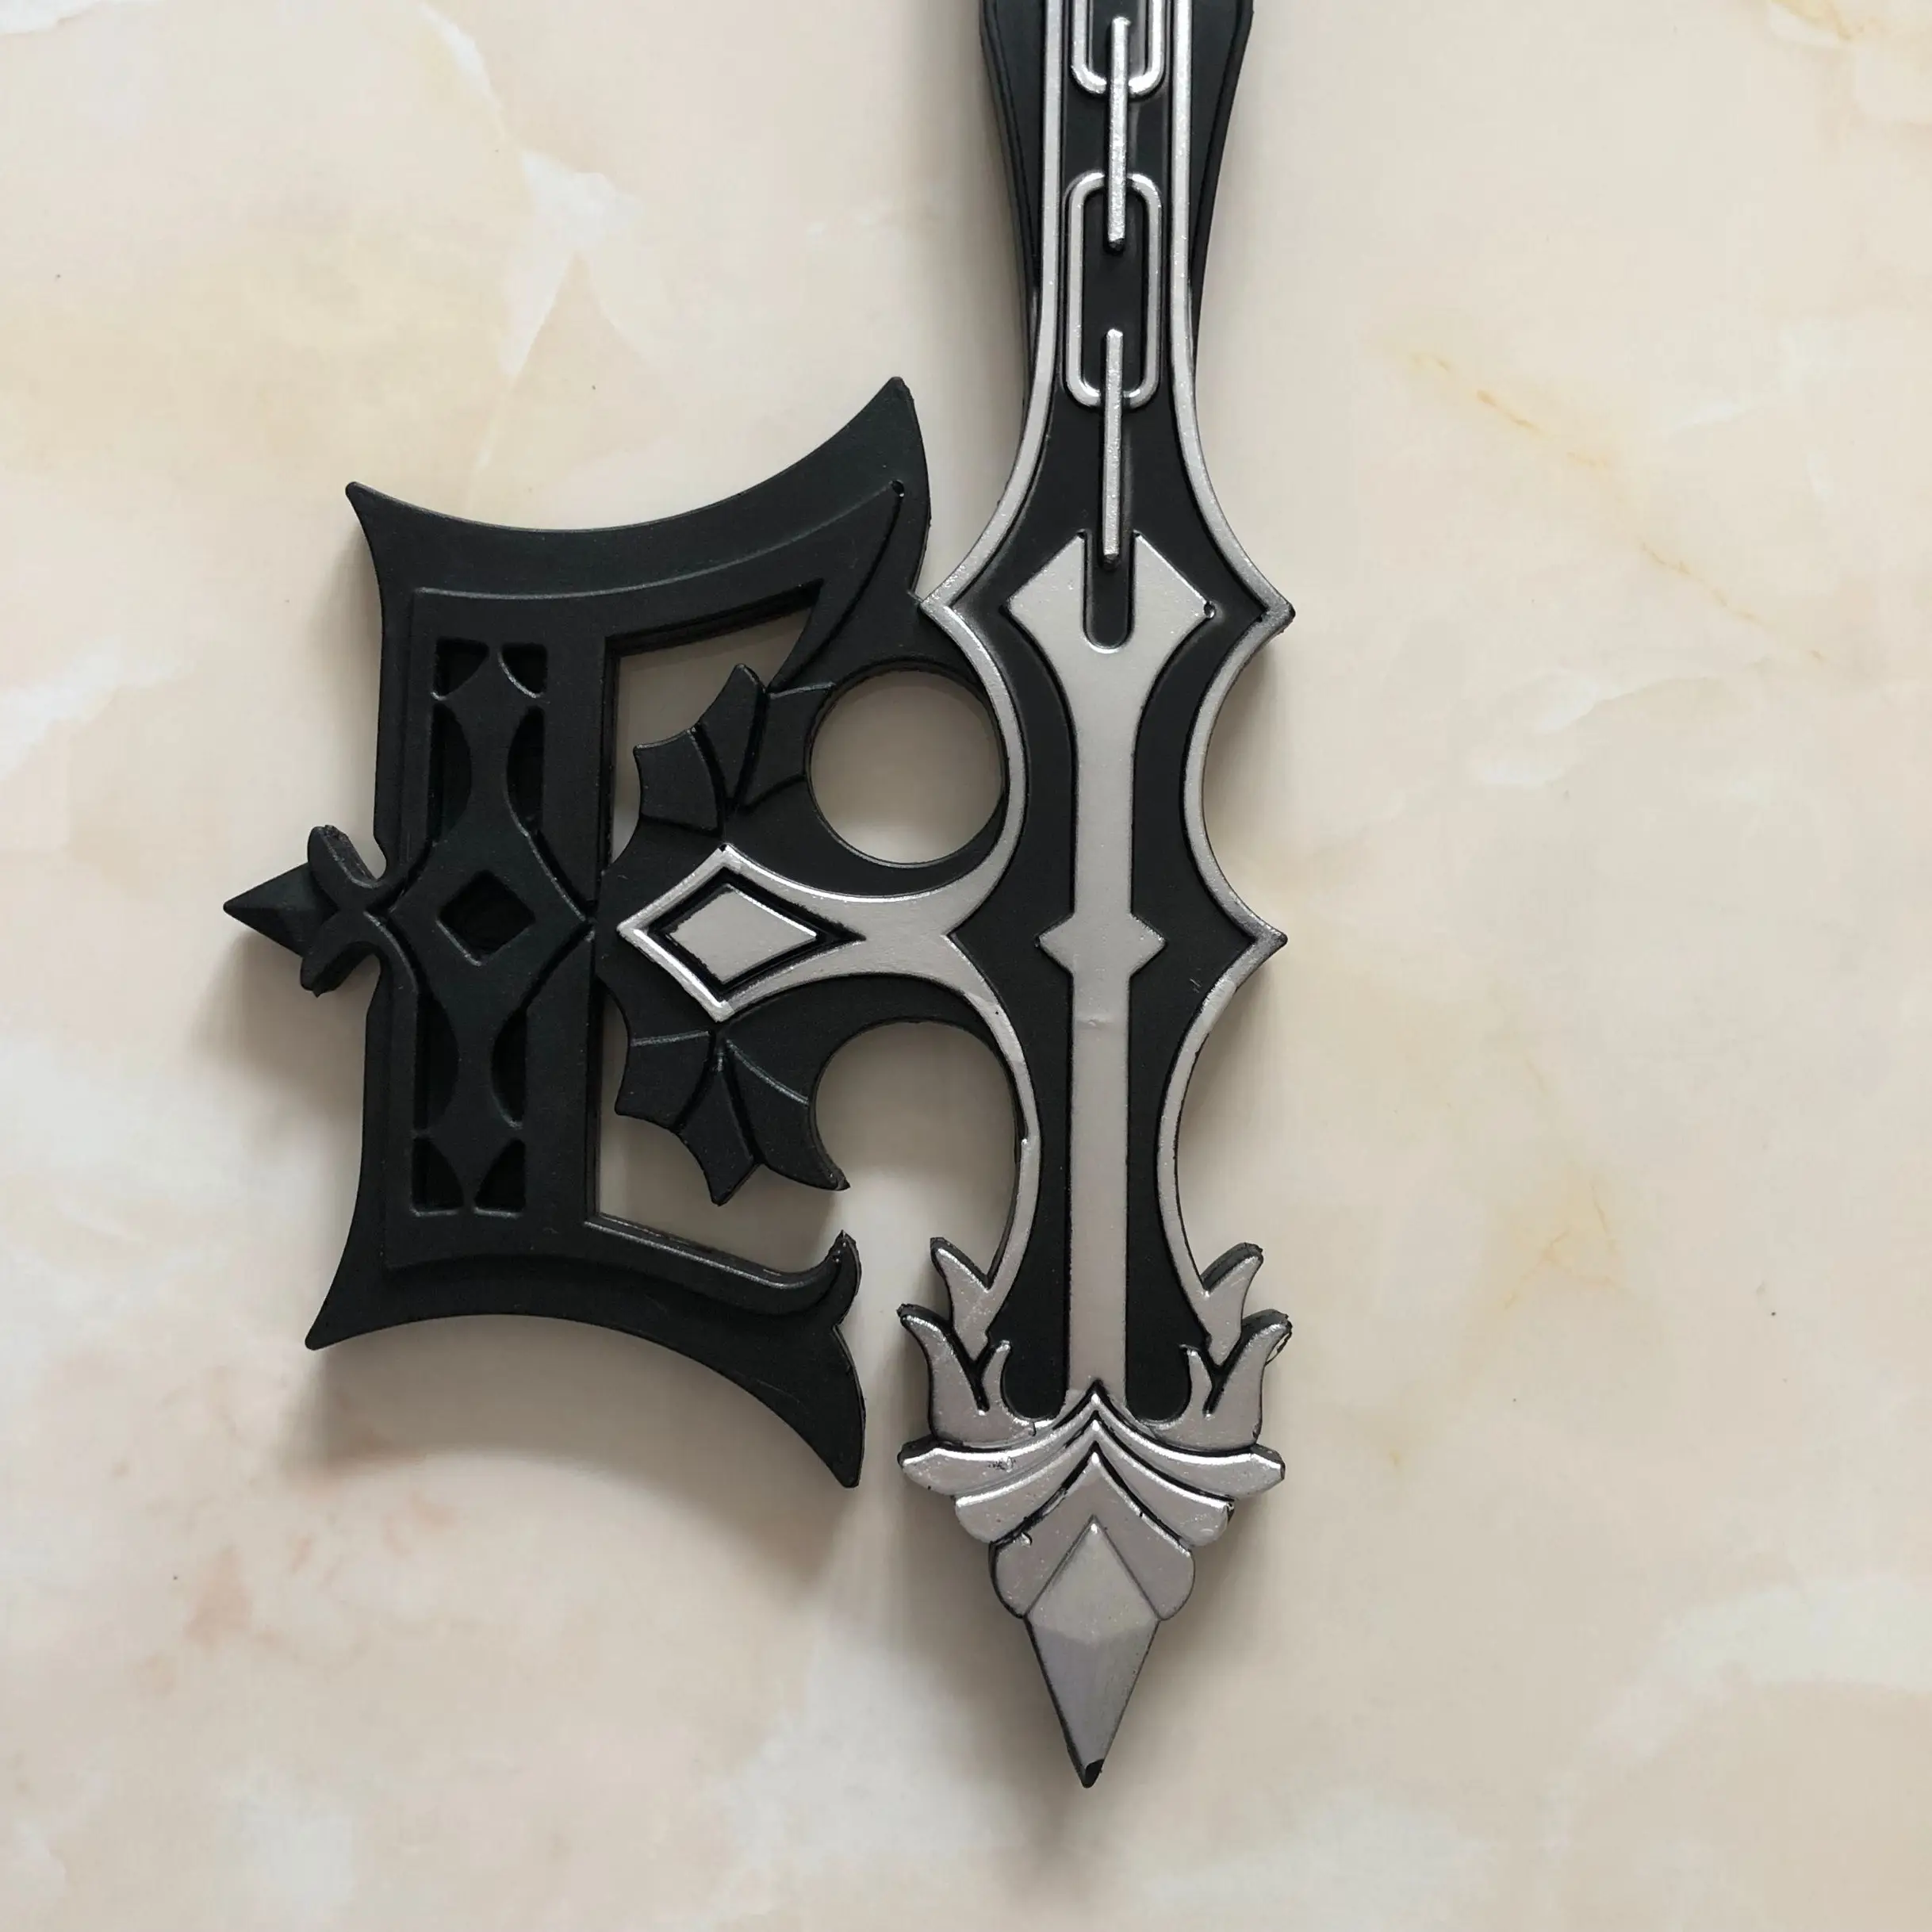 4 стиля Королевство Сердца Сора Бессердечный гигантский ключ тени оружие ключ меч для костюмированного представления